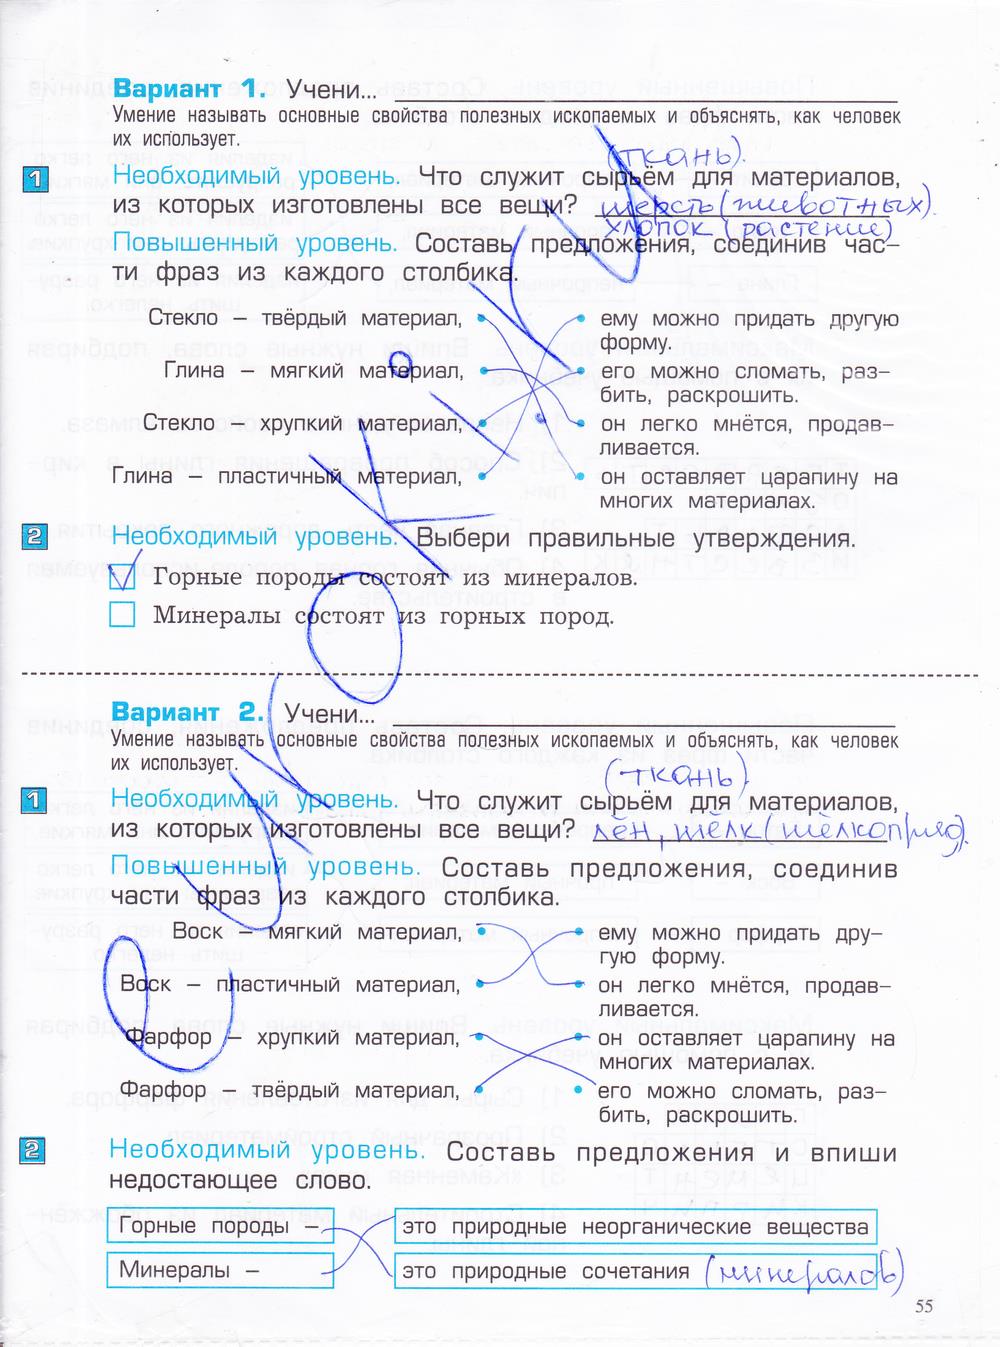 гдз 4 класс проверочные и контрольные работы часть 1 страница 55 окружающий мир Вахрушев, Бурский, Родыгина